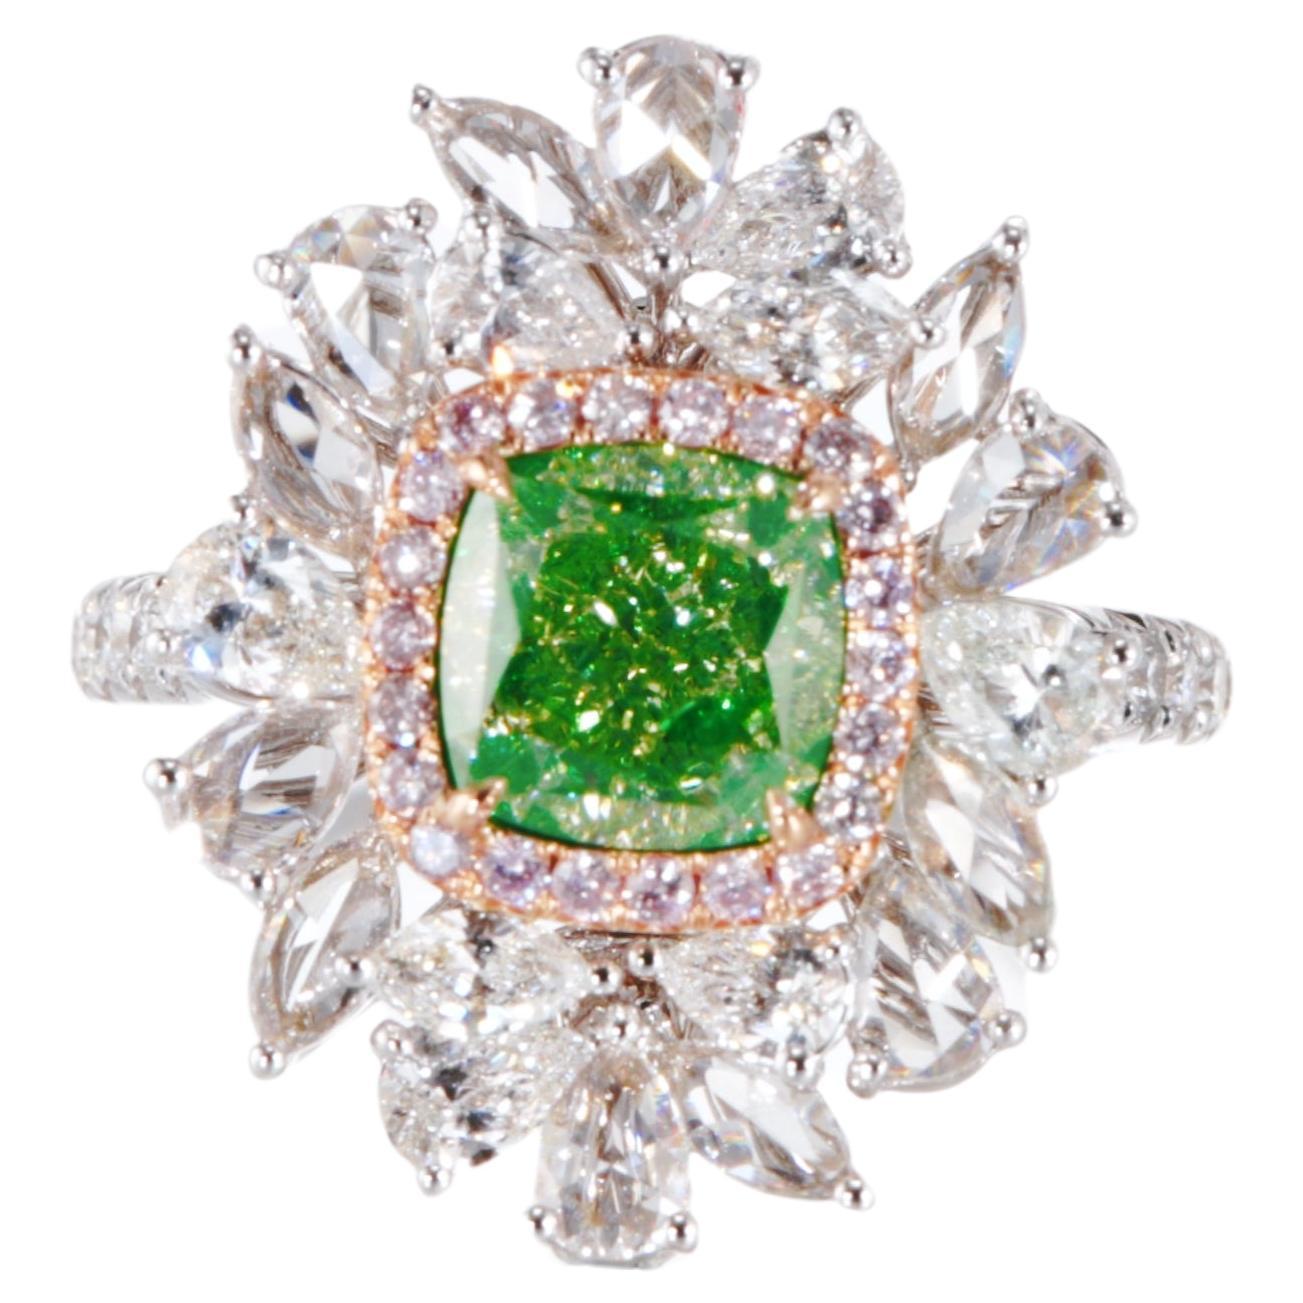 GIA Certified, 2.03ct Natural Fancy Green-Yellow Cushion cut diamond ring 18kt 